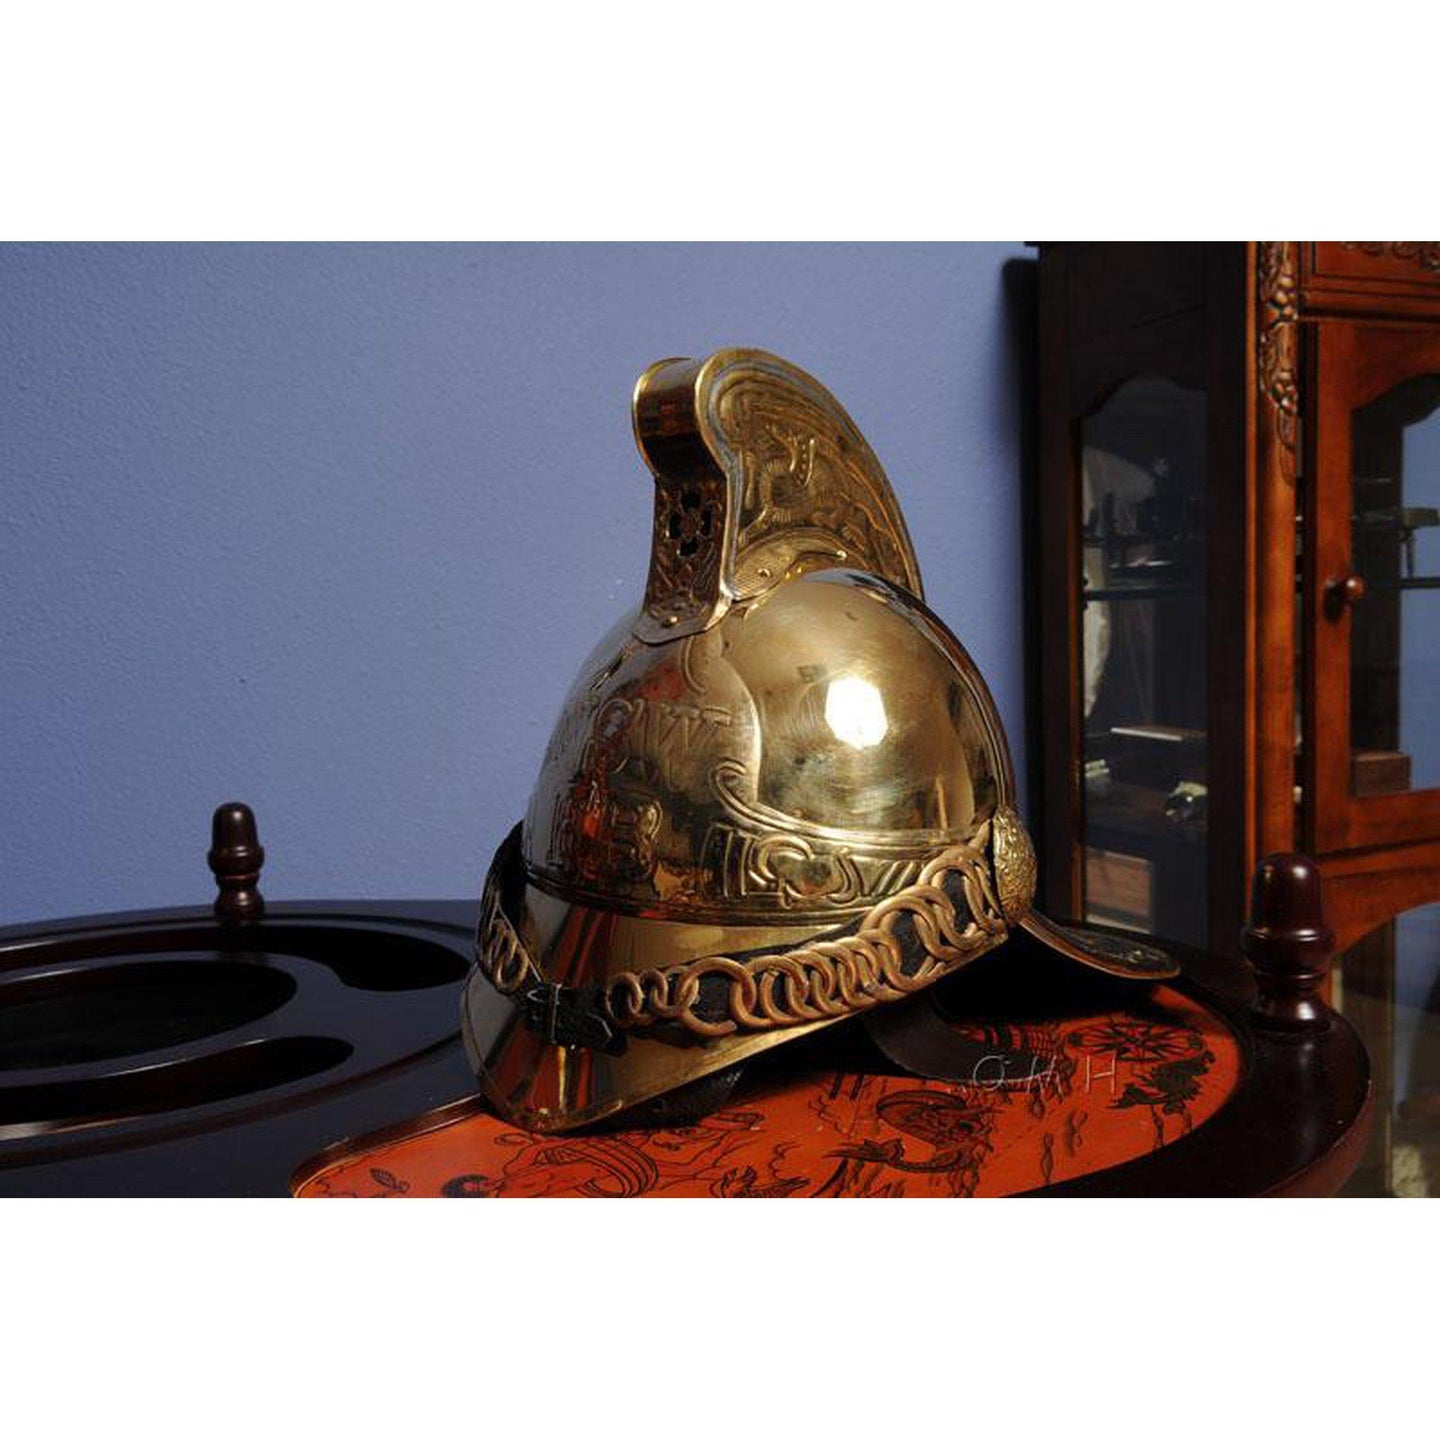 Old Modern Fireman Helmet ND038